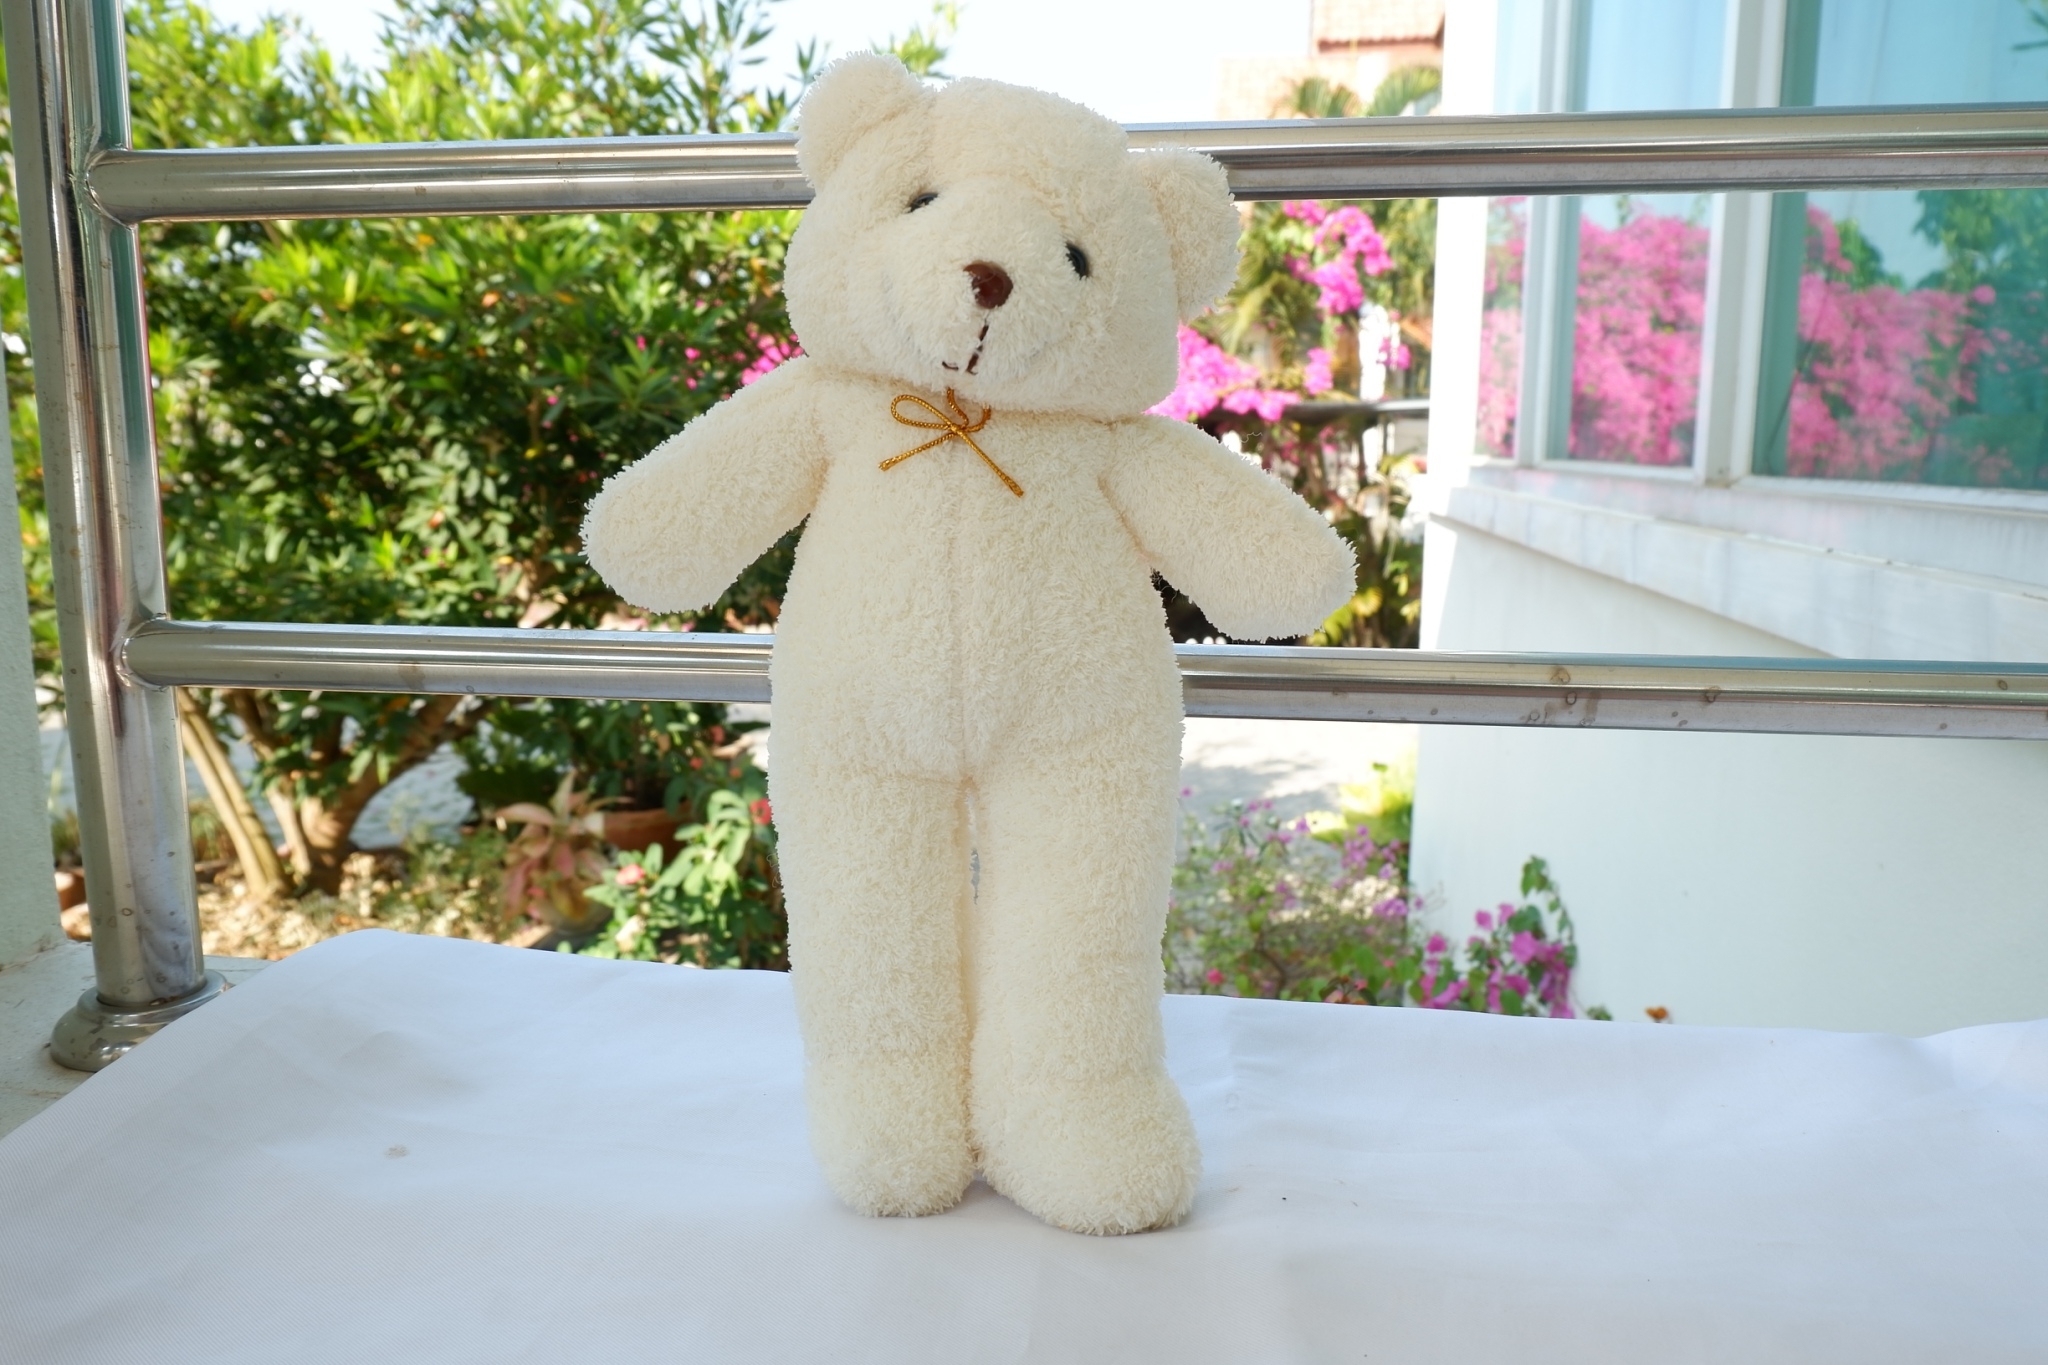 ตุ๊กตาหมียืนผ้าขนหนู ตัวสูง 13 นิ้ว ตัวโต  ผ้าสวย ขนาดพอดี ไซร์พิเศษ เหมะกับทำเป็นของพรีเมียม หรือของขวัญ